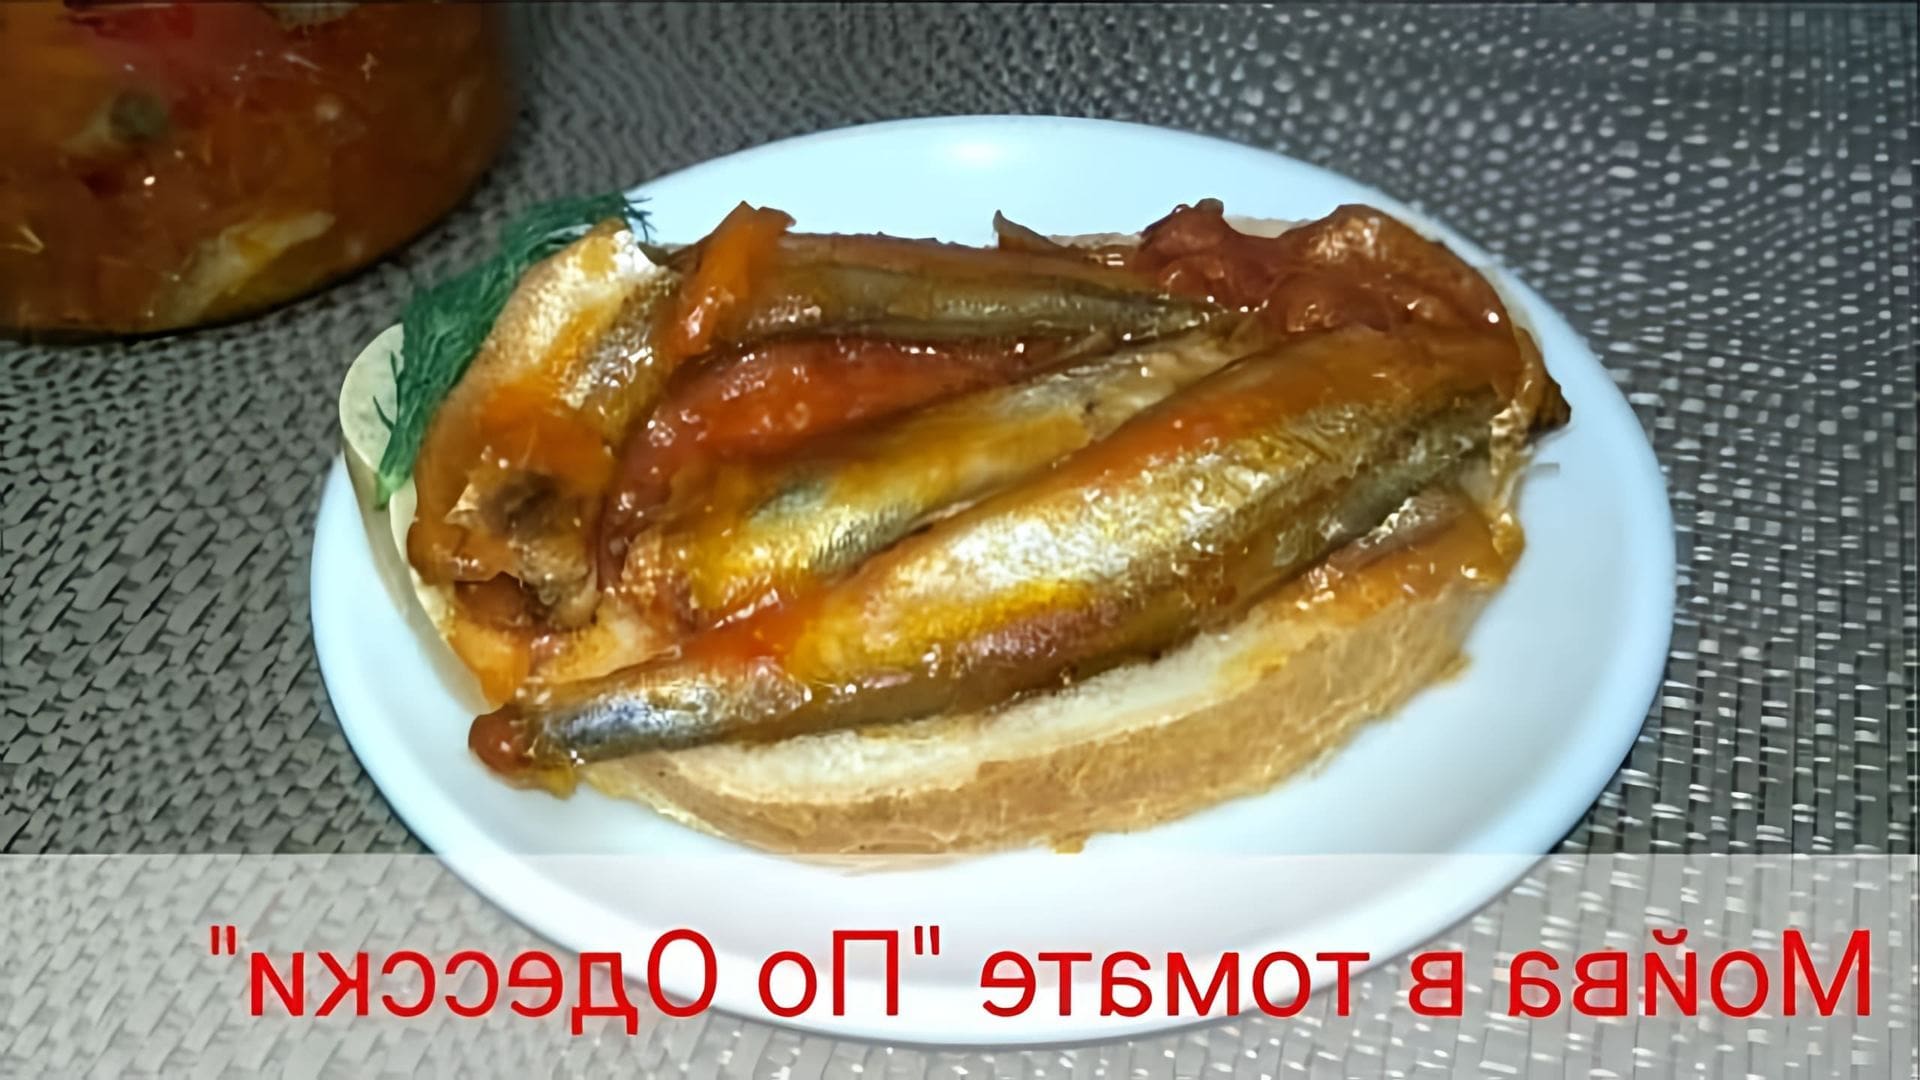 Сегодня готовлю блюдо-#мойва в томате По-Одесски. Мойва - бюджетно и быстро! Такую мойву вы еще не пробовали! 